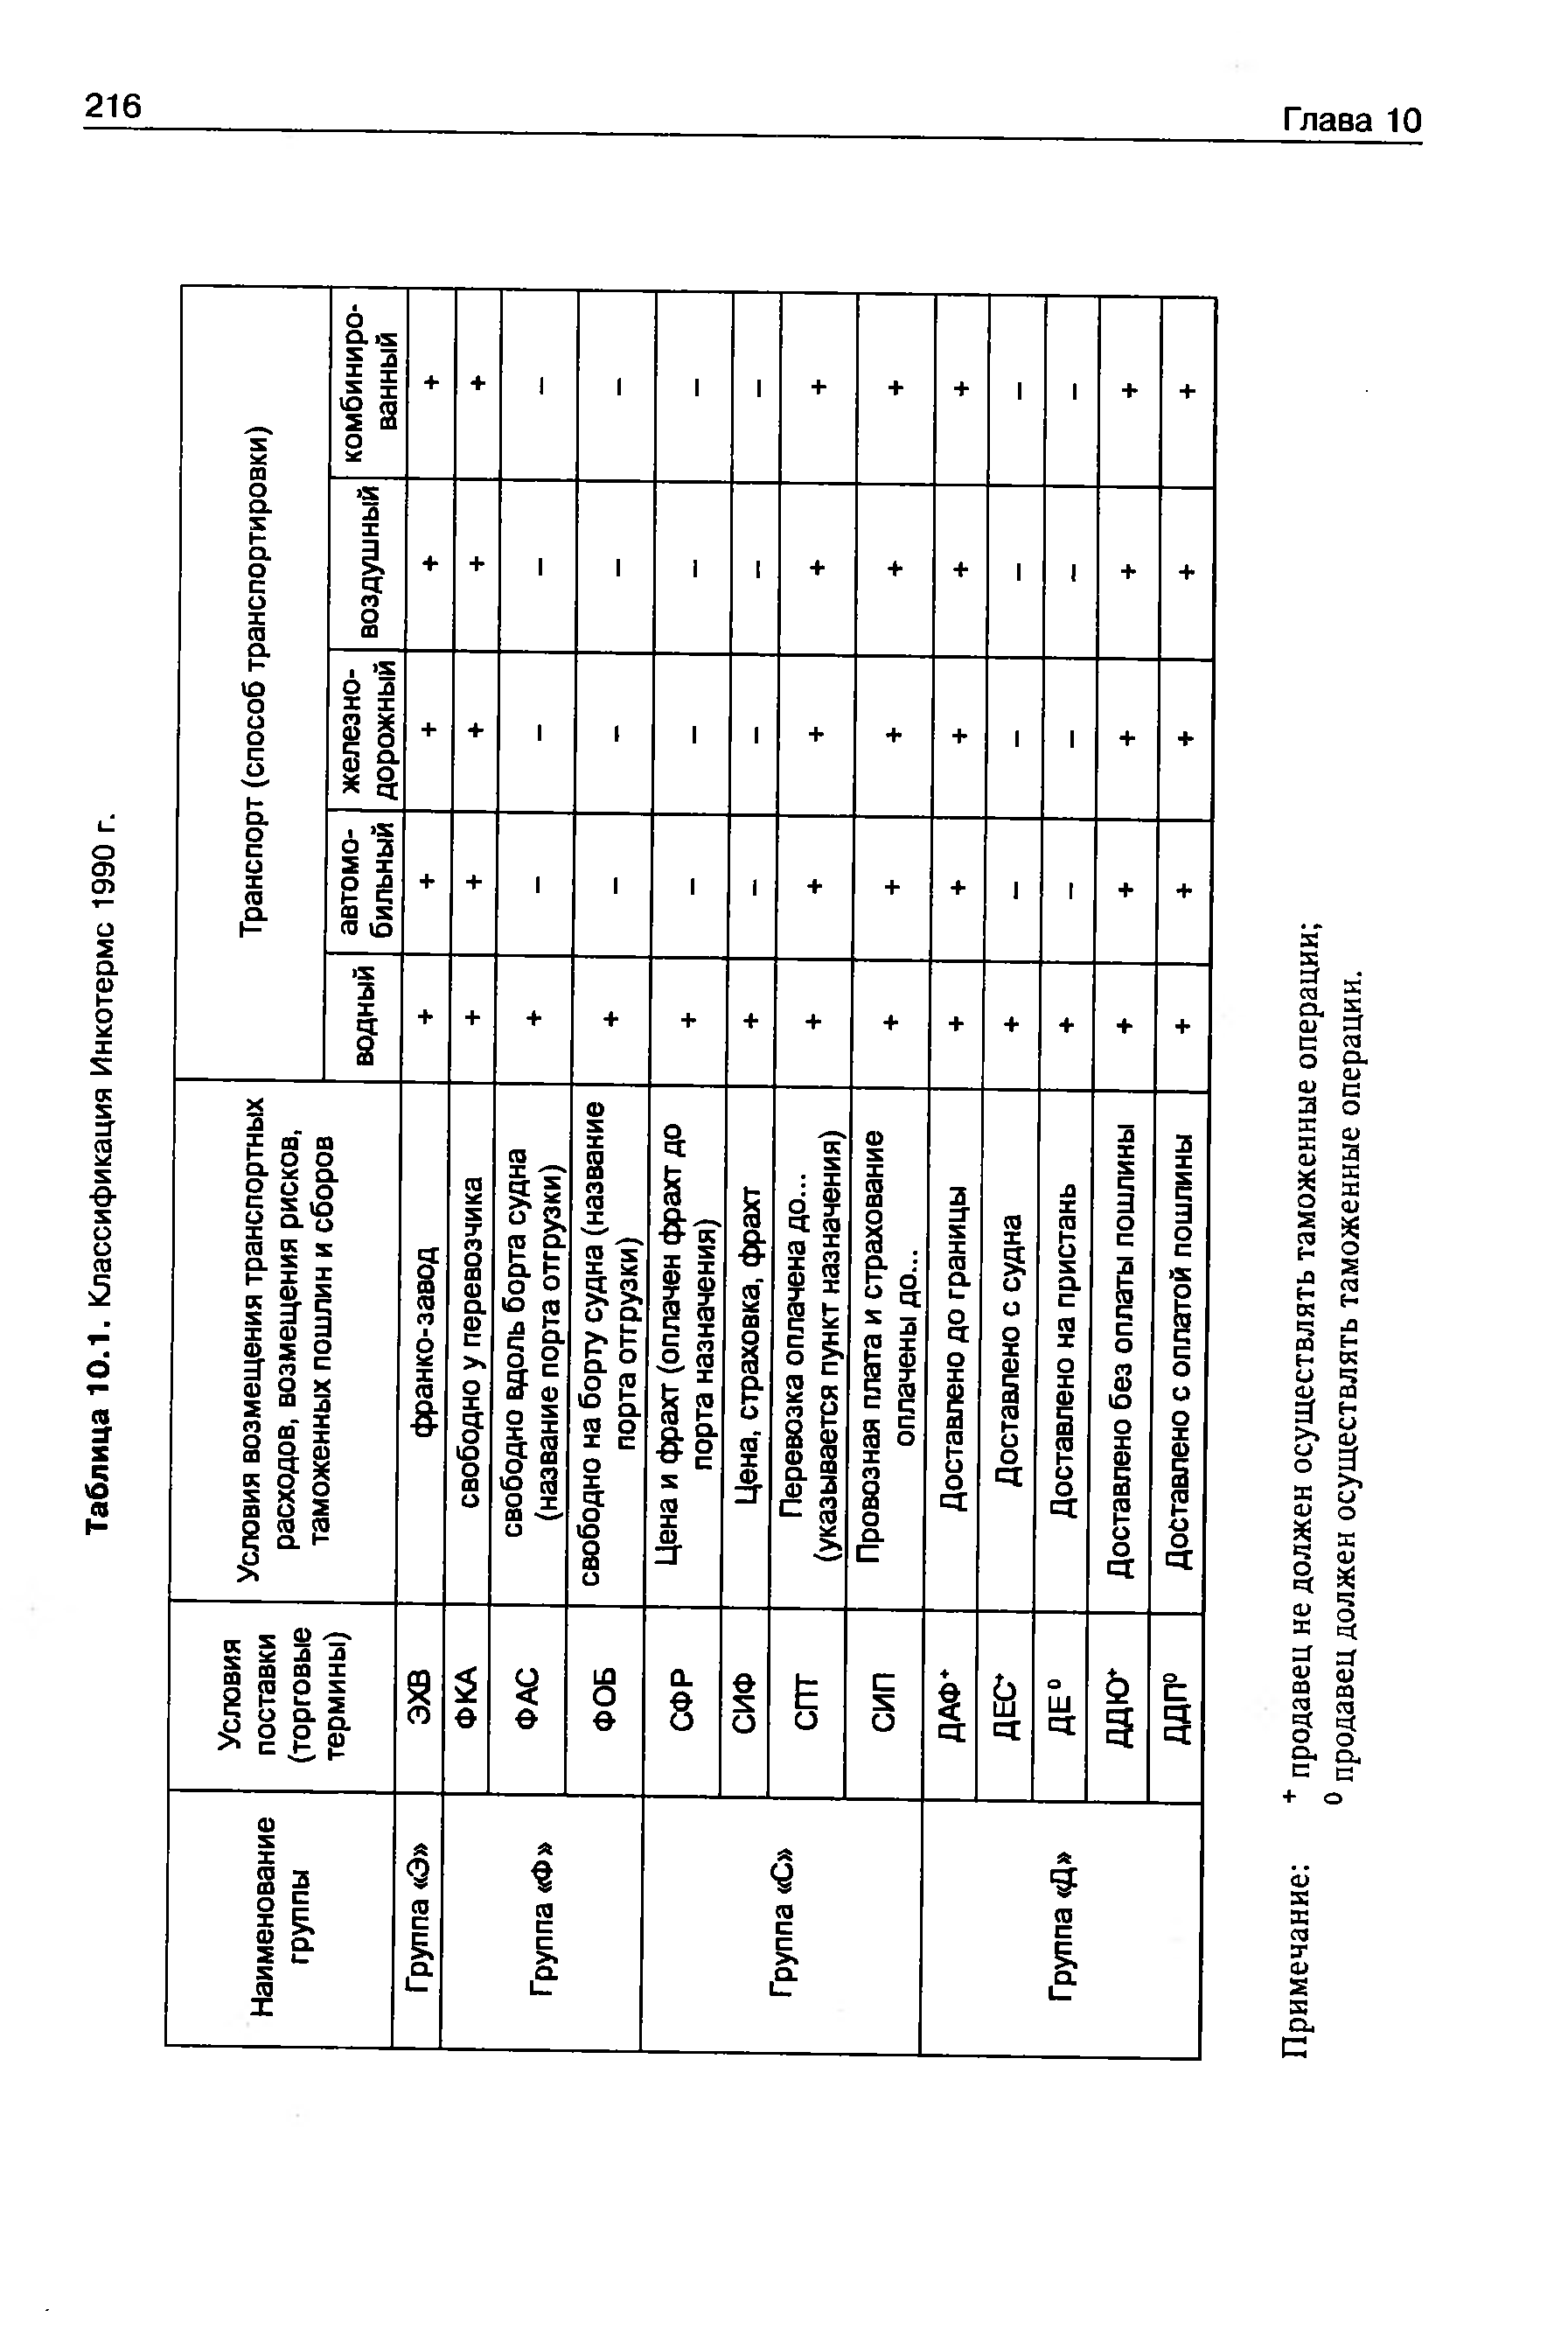 Таблица 10.1. Классификация Инкотермс 1990 г.
